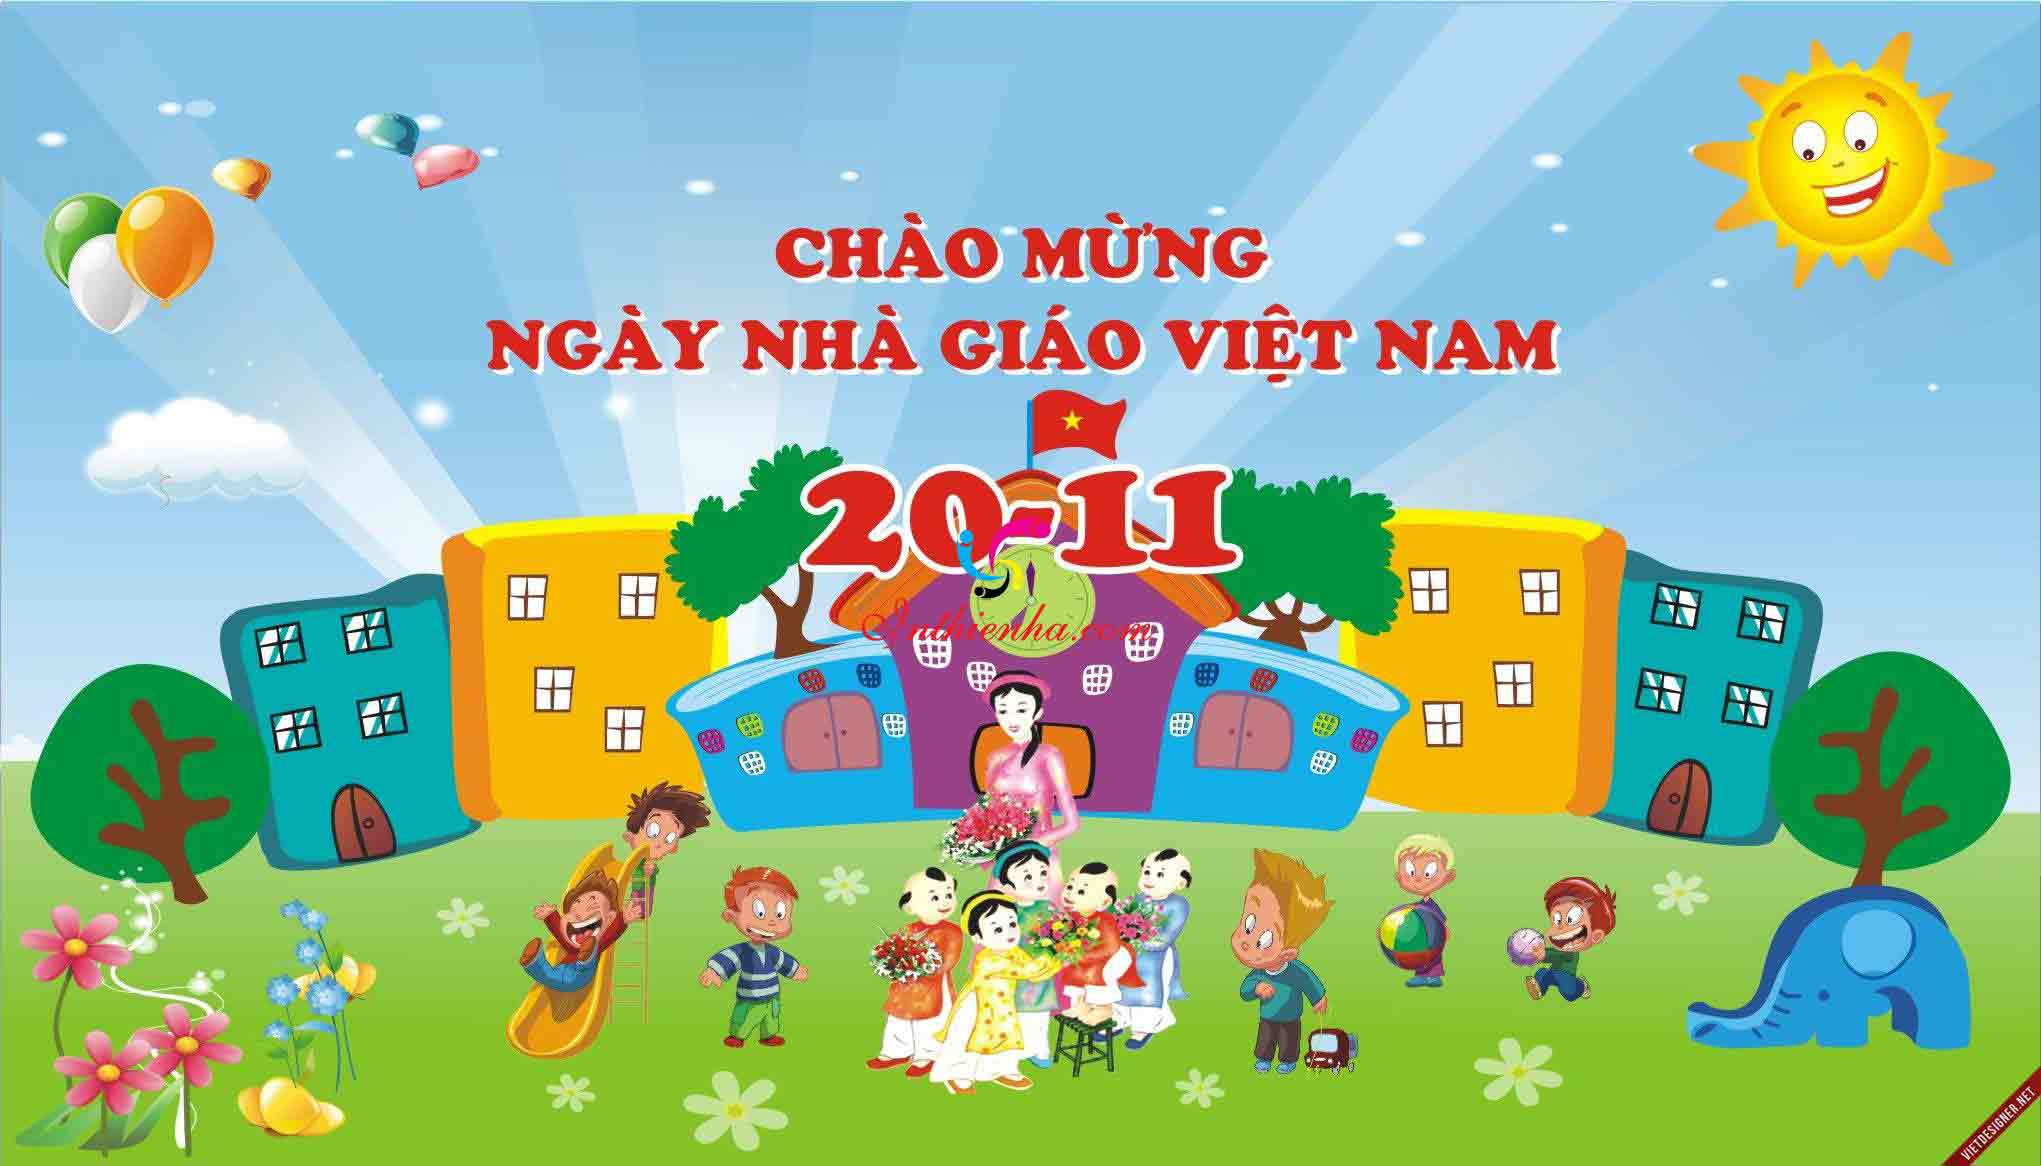 Mẫu background 20/11 và phông nền ngày Nhà giáo Việt Nam đẹp nhất để tôn vinh các nhà giáo của chúng ta. Hãy cùng xem và lựa chọn những mẫu phù hợp nhất để bày tỏ lòng biết ơn tới người thầy của mình. 